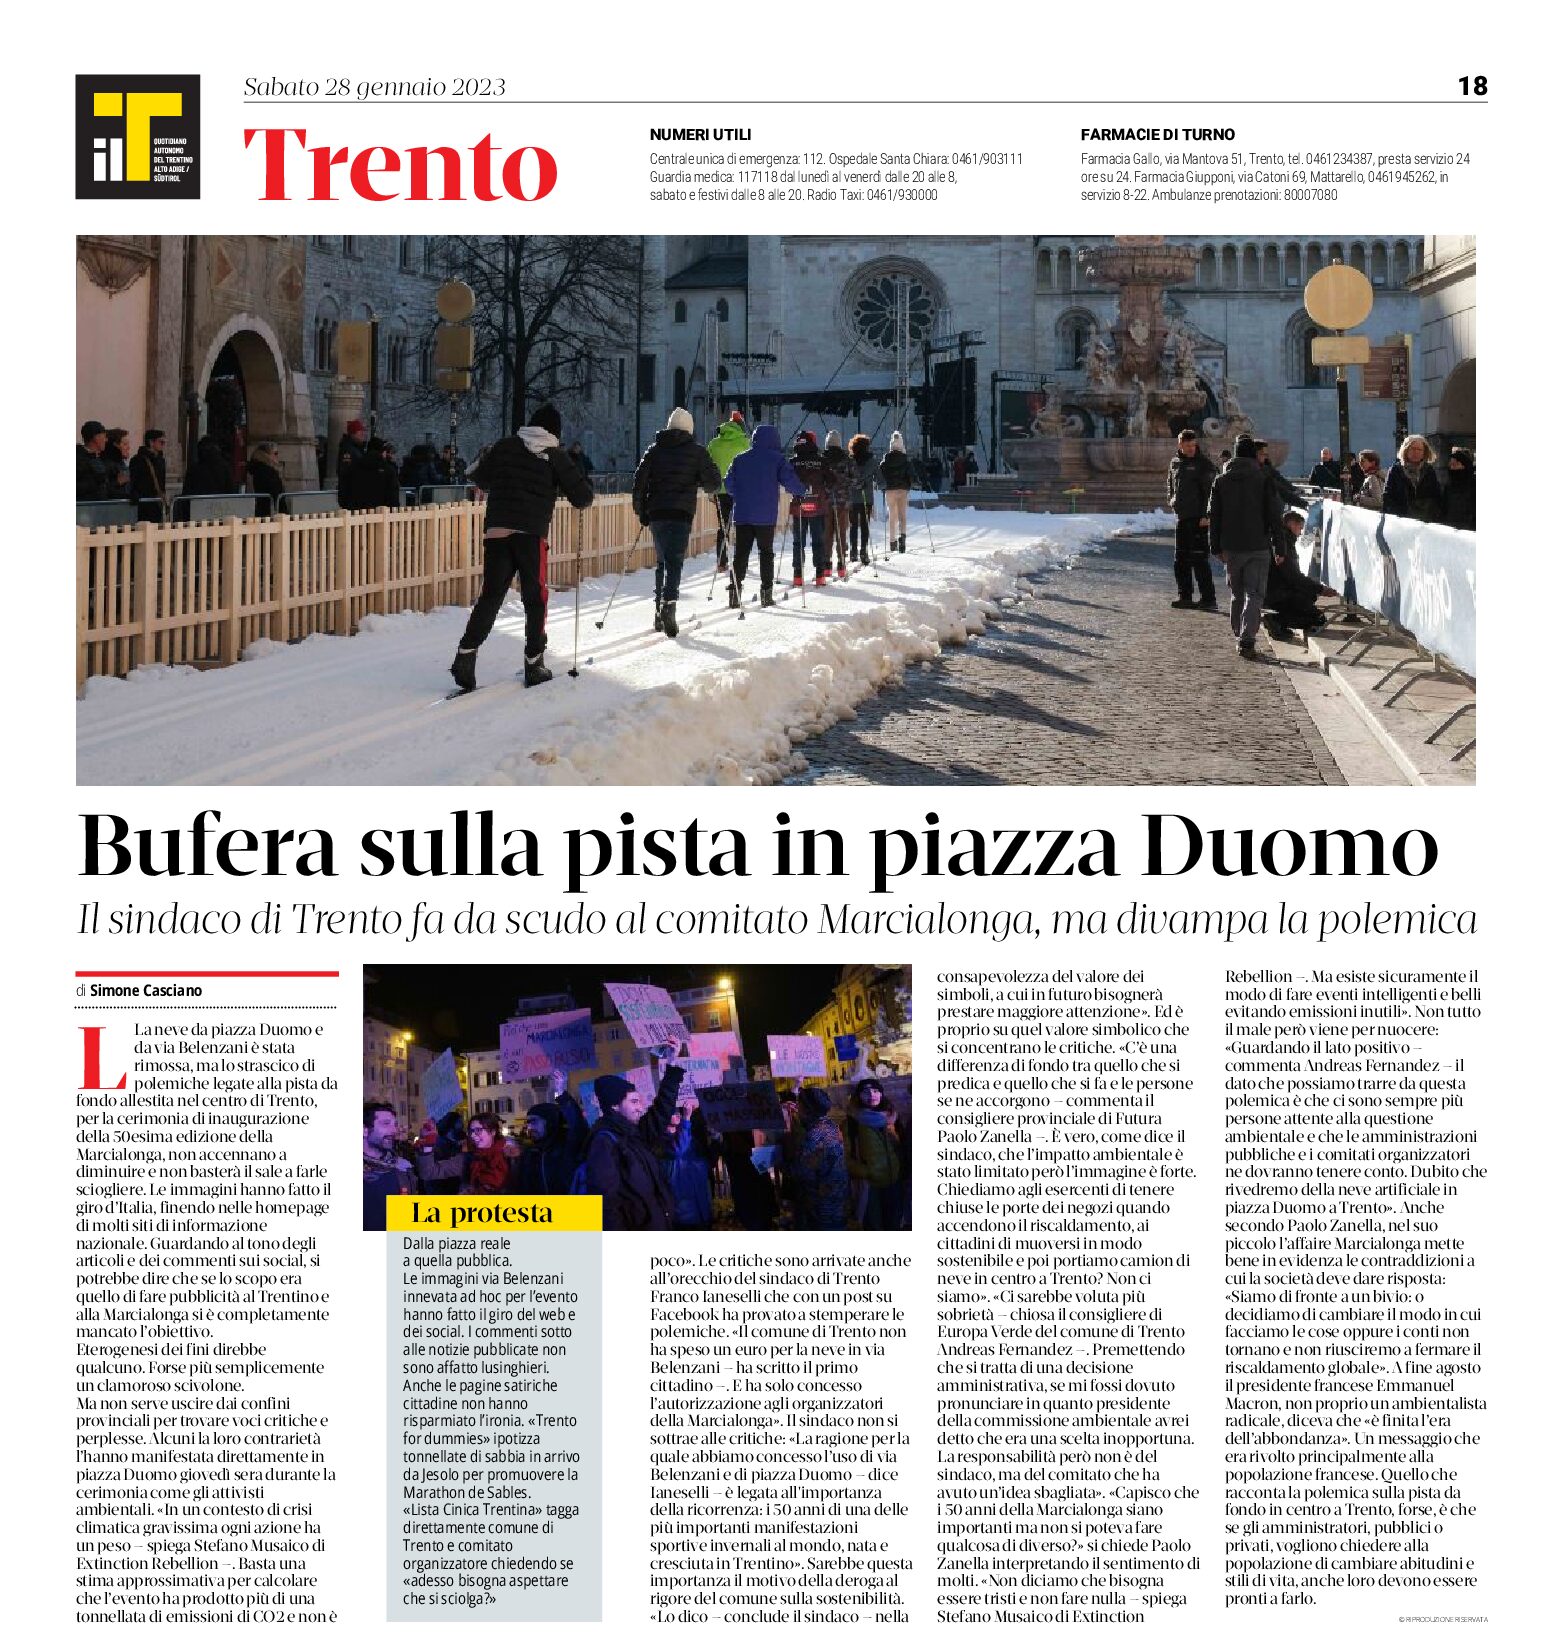 Trento, Marcialonga: bufera sulla pista in piazza Duomo